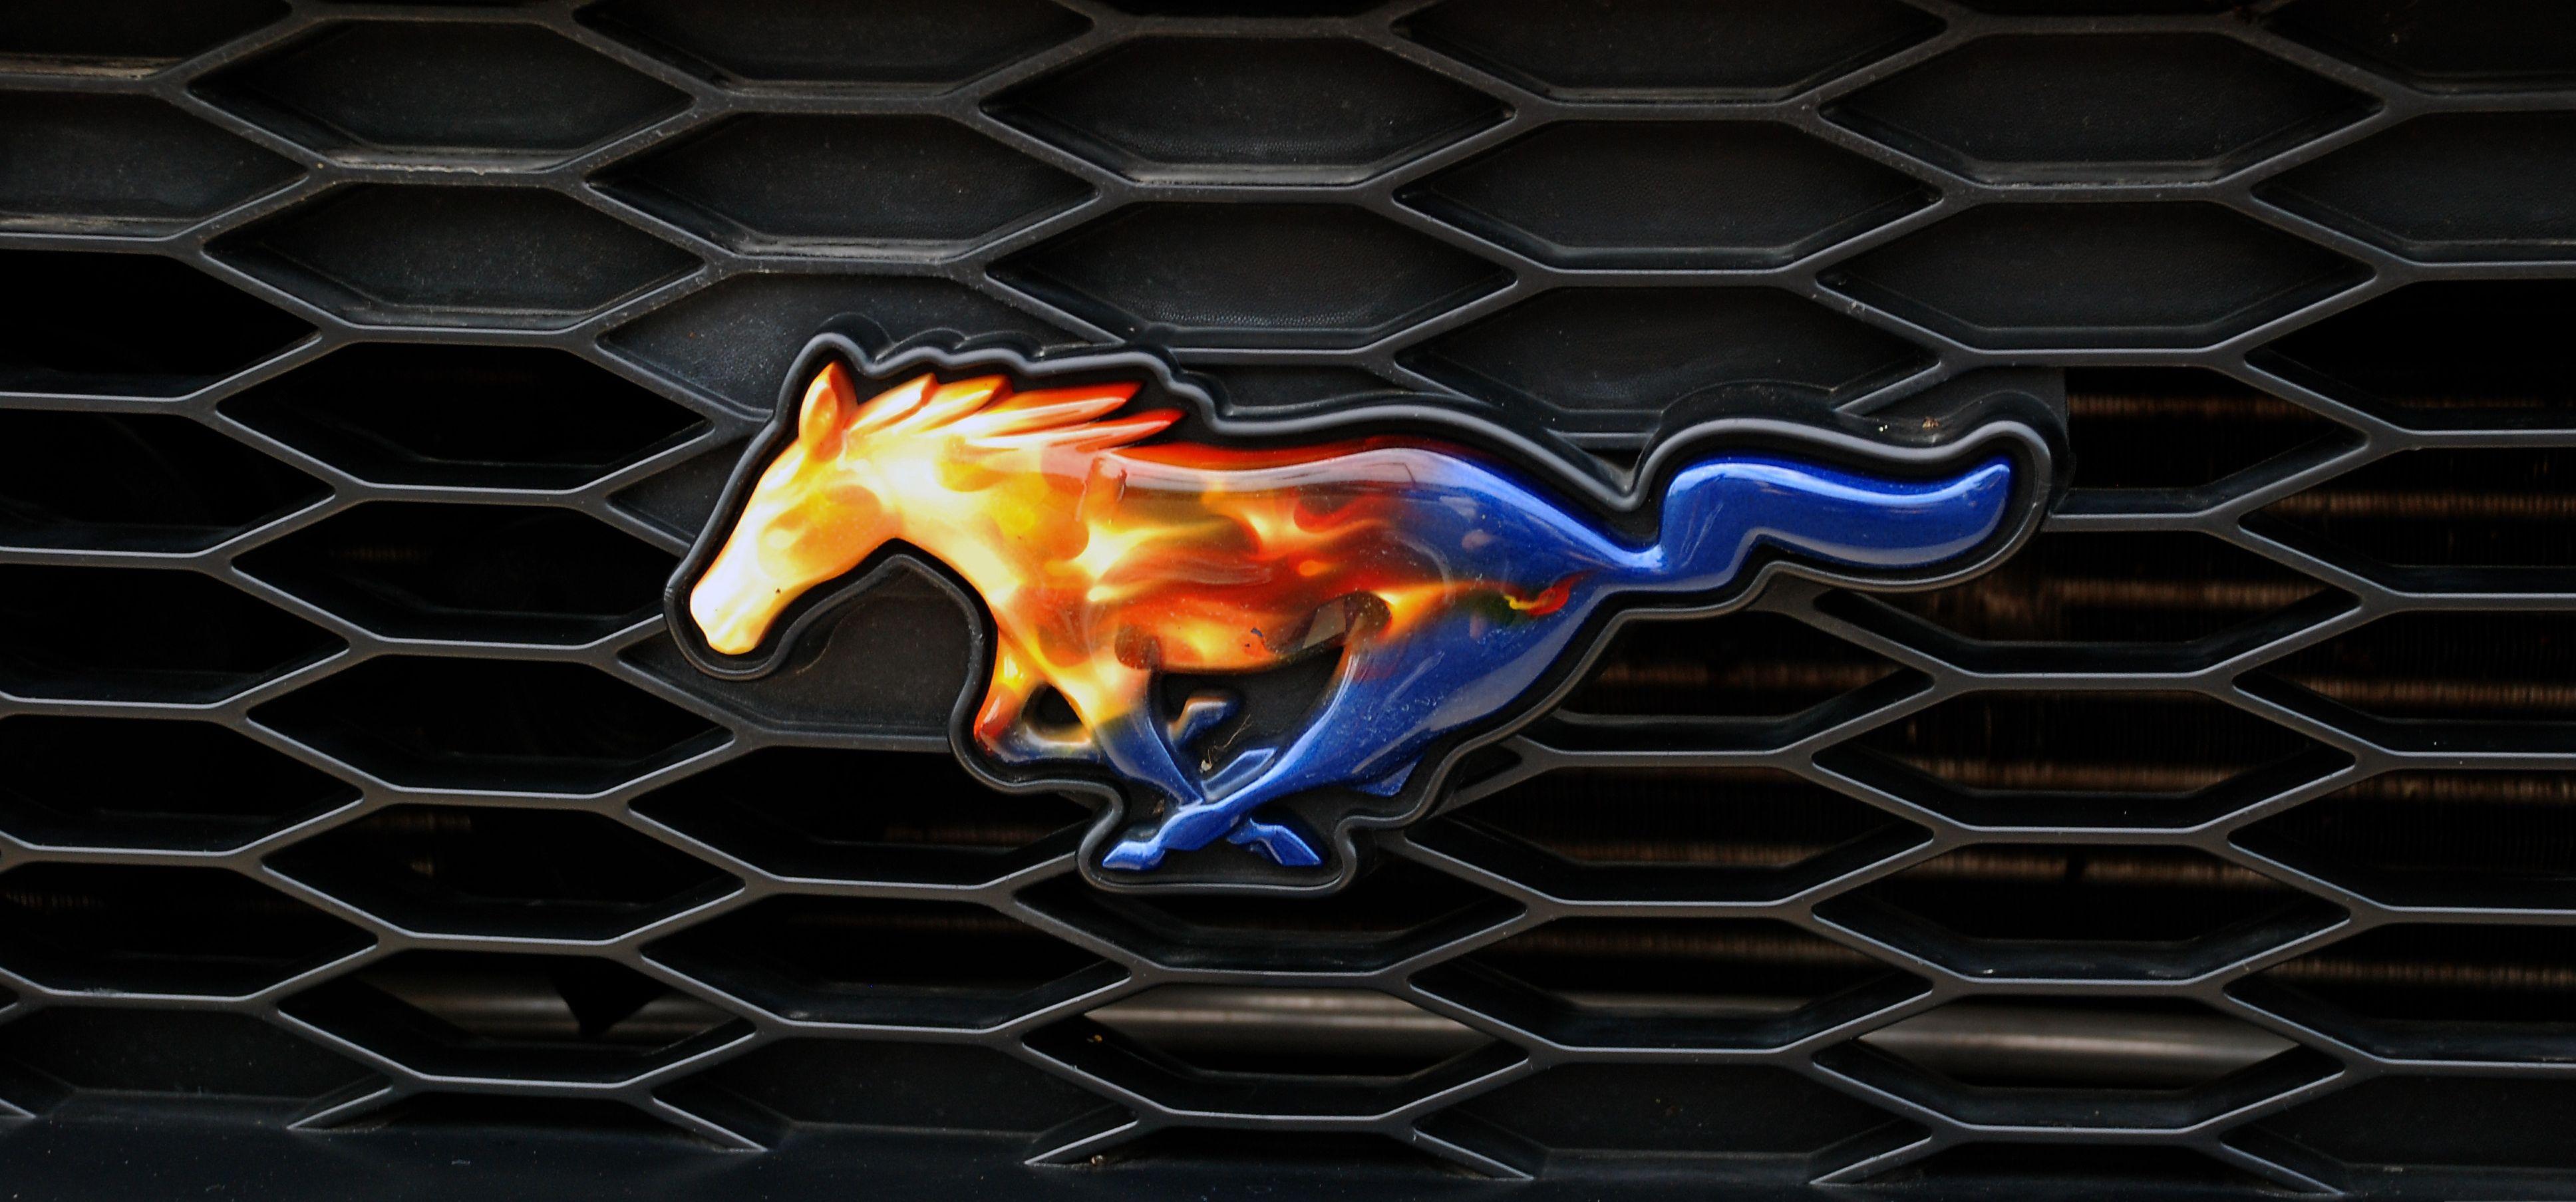 Mustang Wallpaper Free